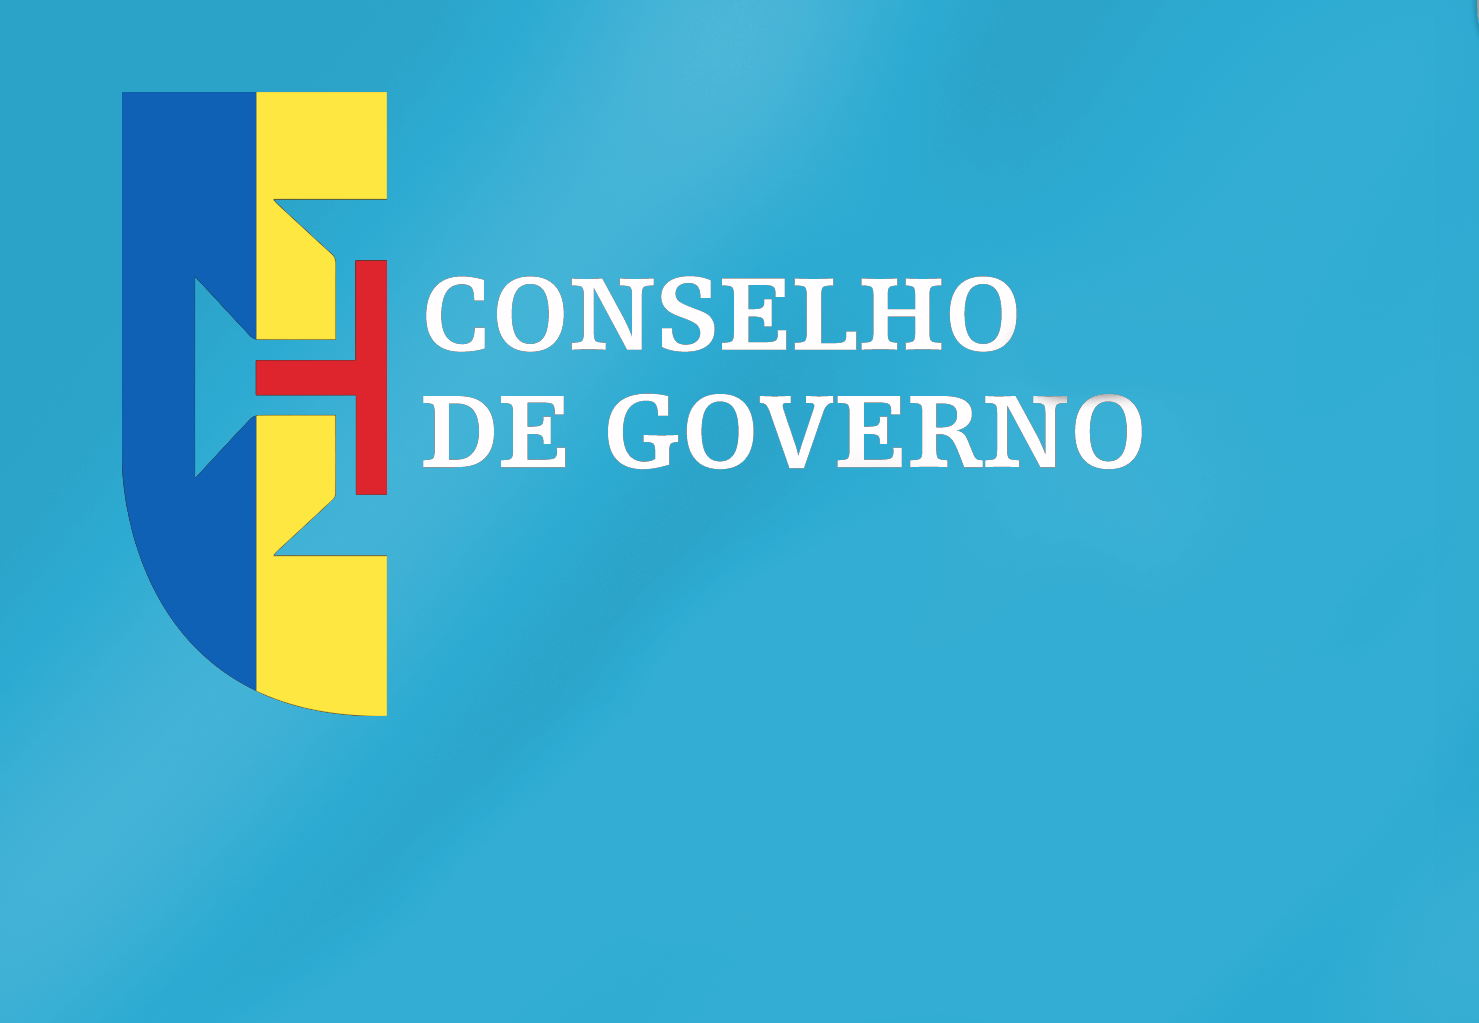 Conclusões Conselho de Governo - 23 de junho de 2022